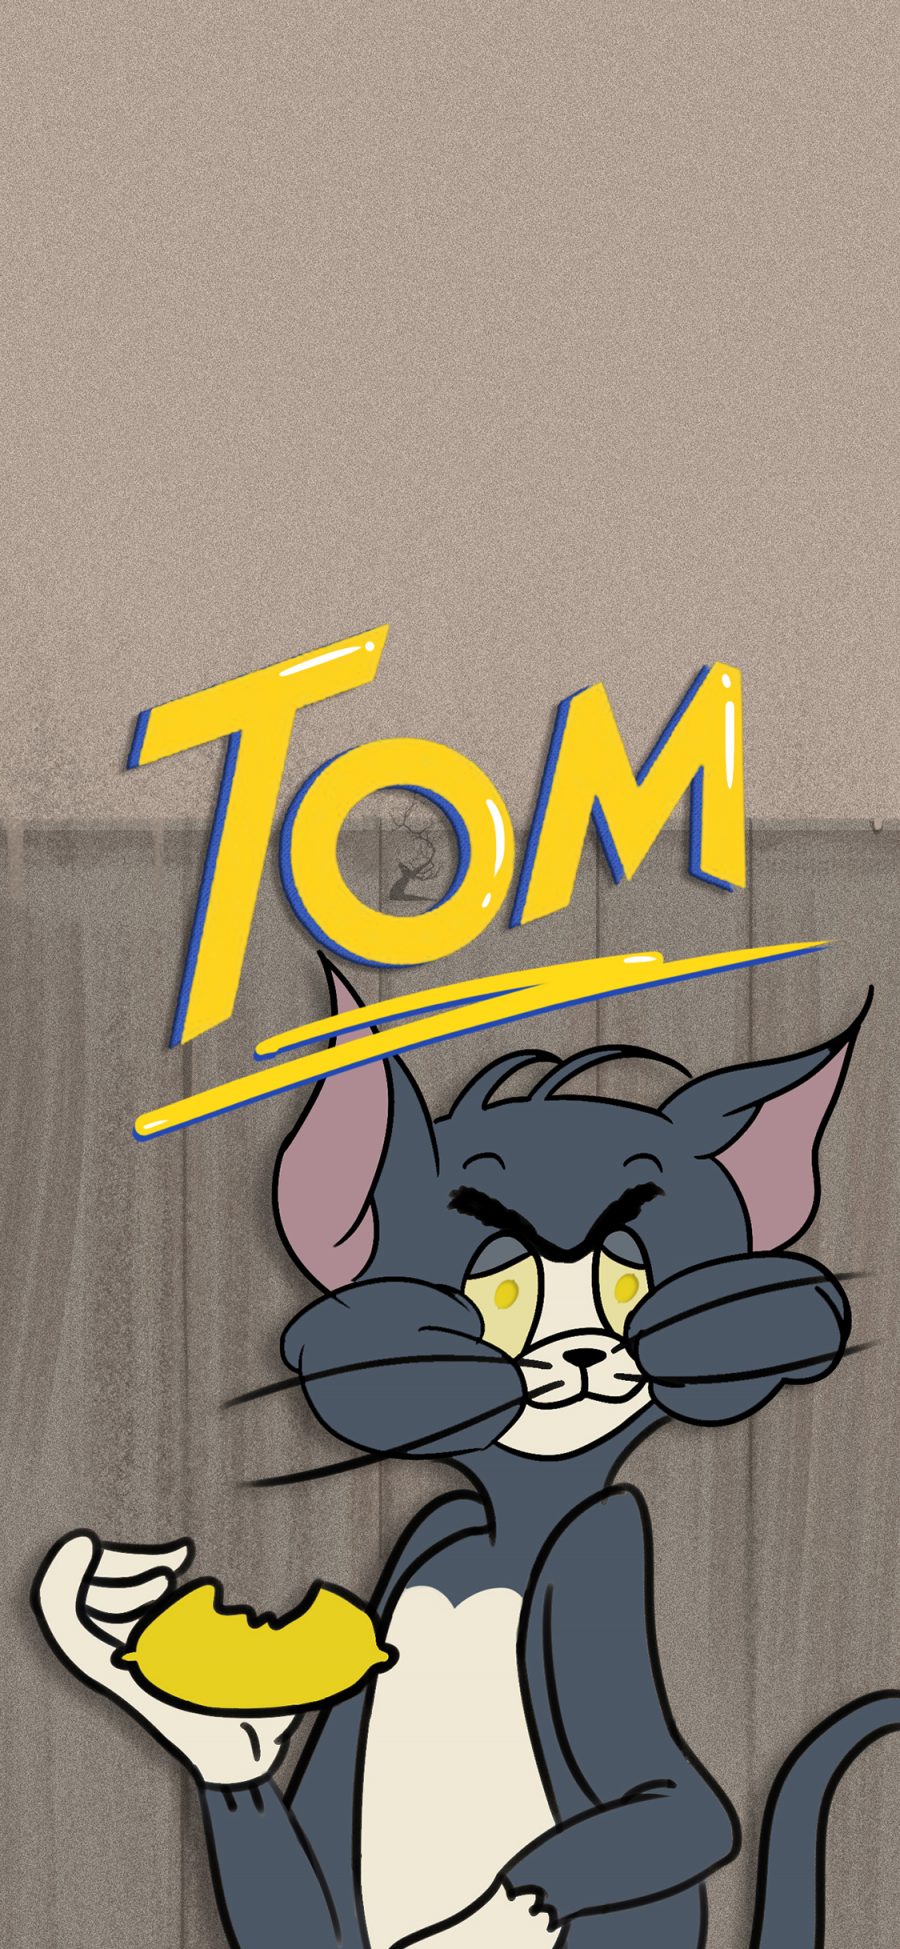 [2436×1125]动画 猫和老鼠 Tom 汤姆猫 苹果手机动漫壁纸图片